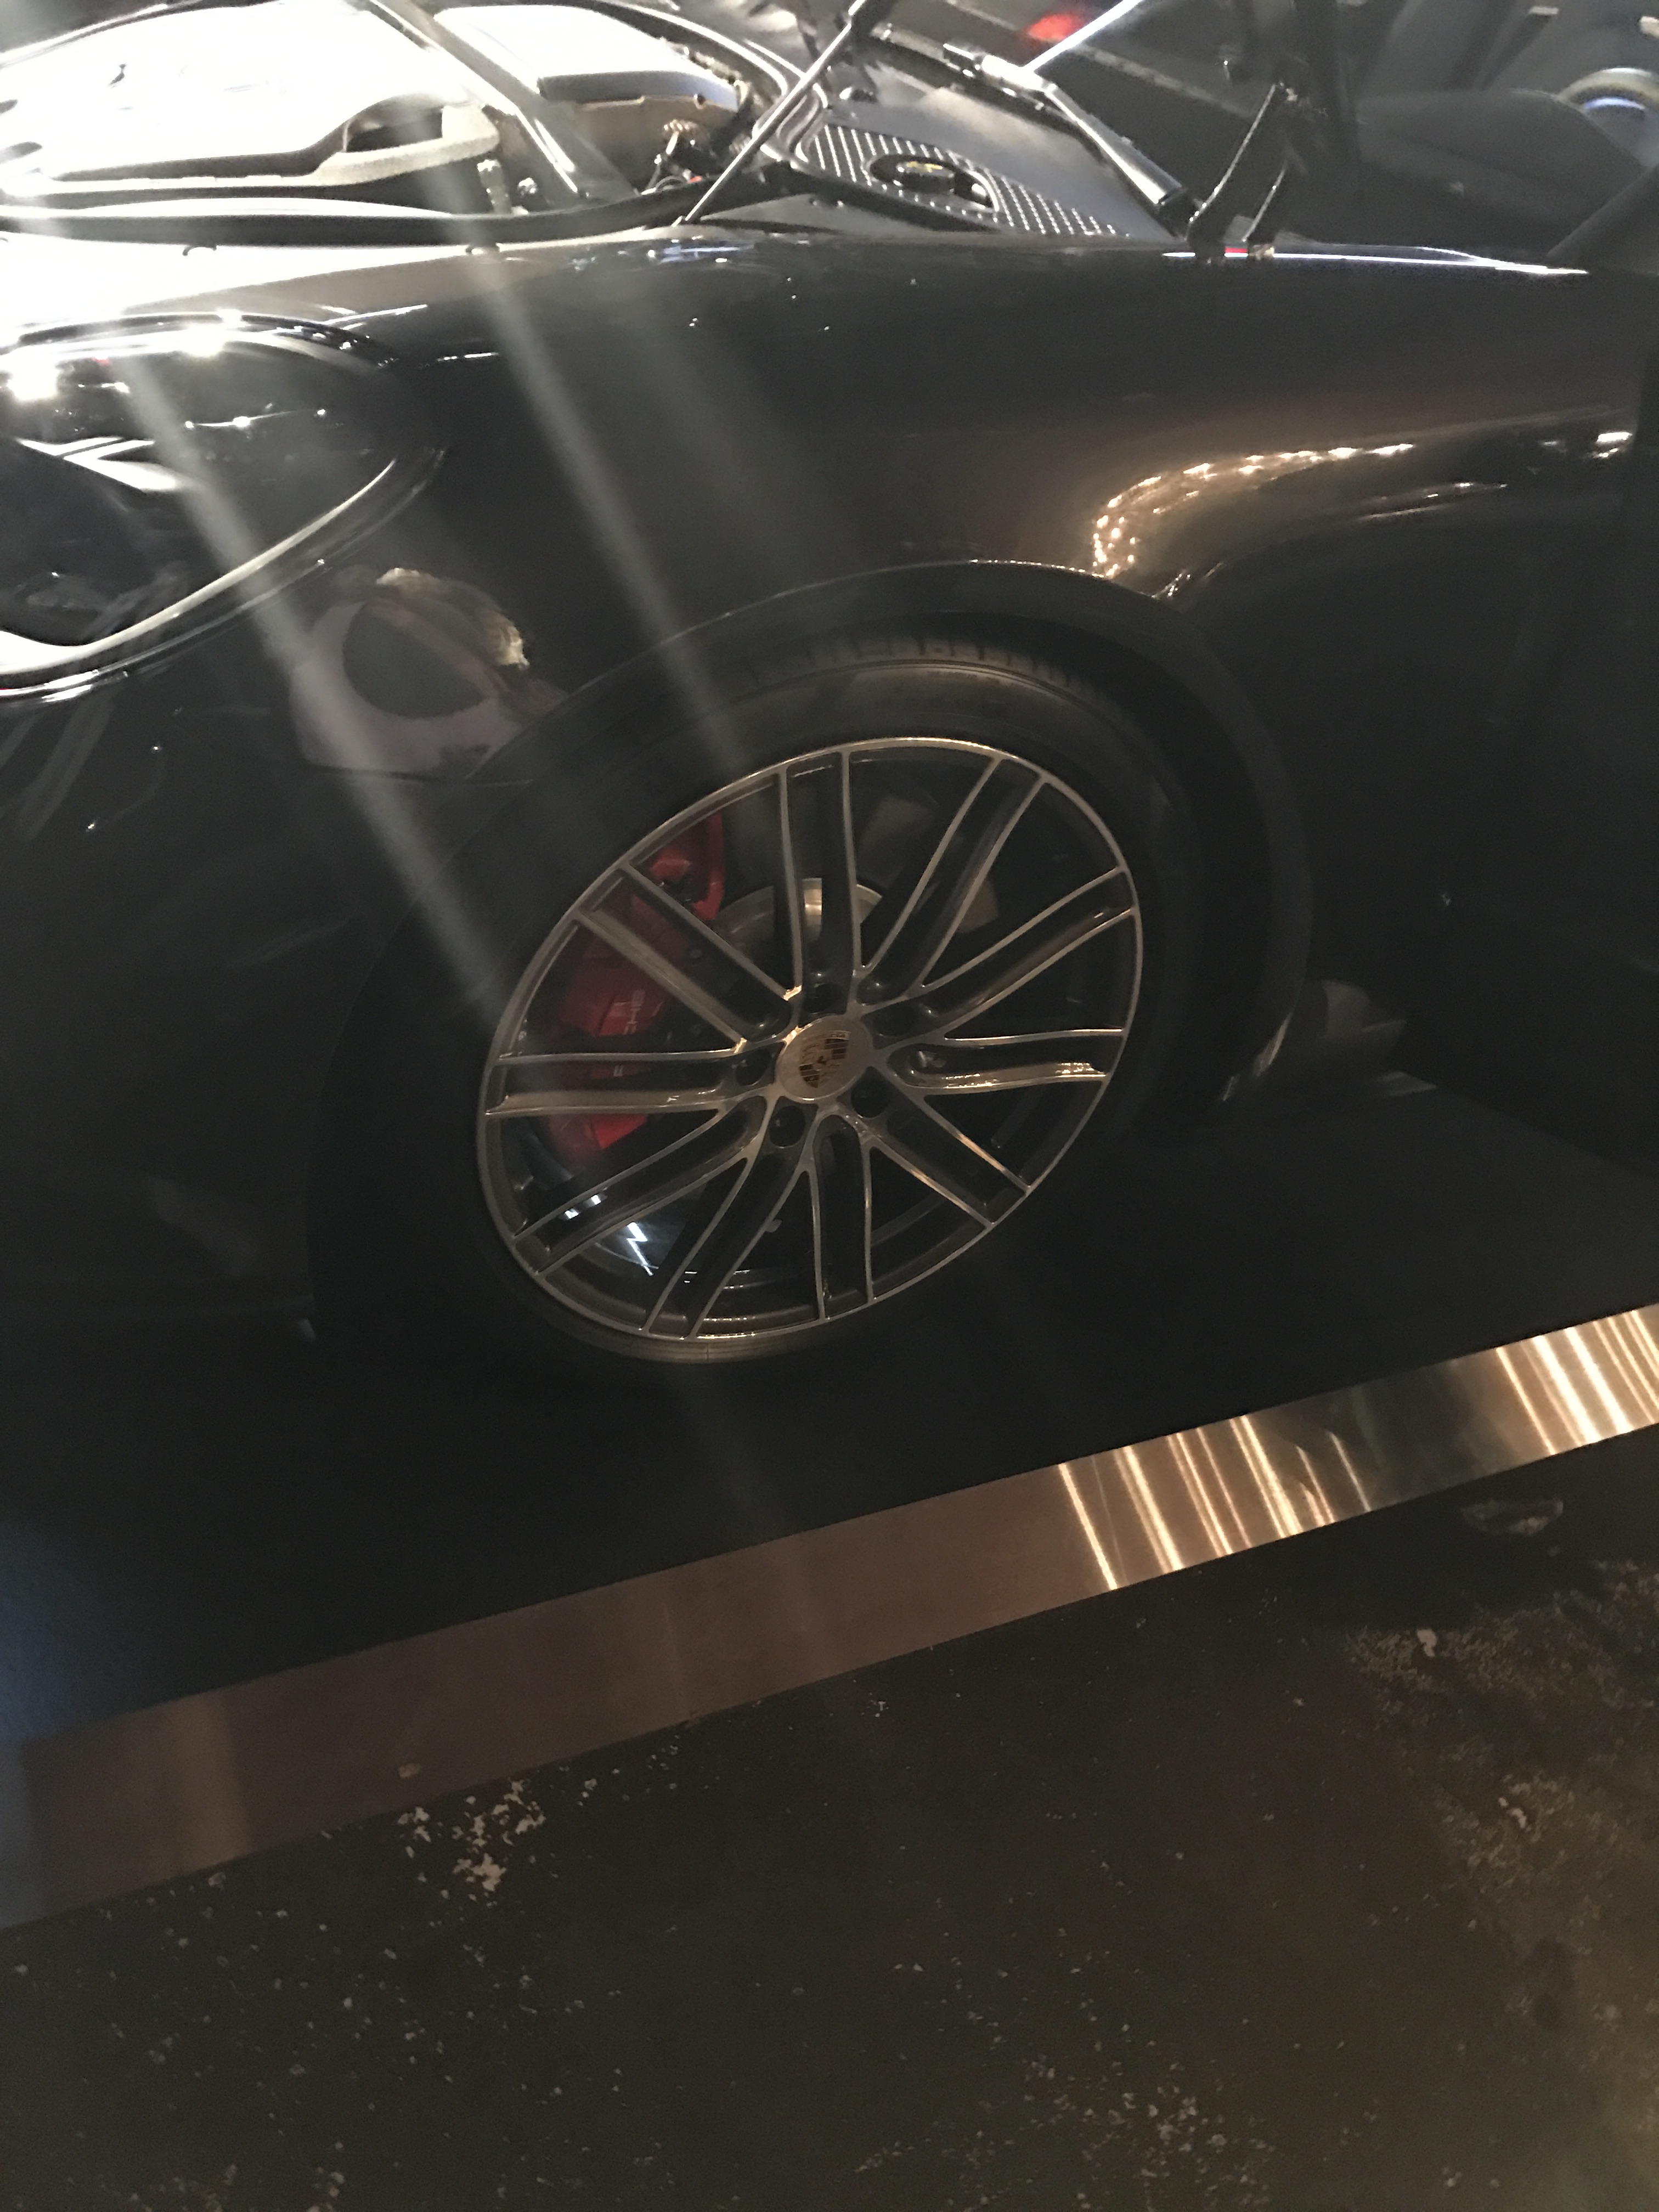 2017 Porsche Panamera - Exterior